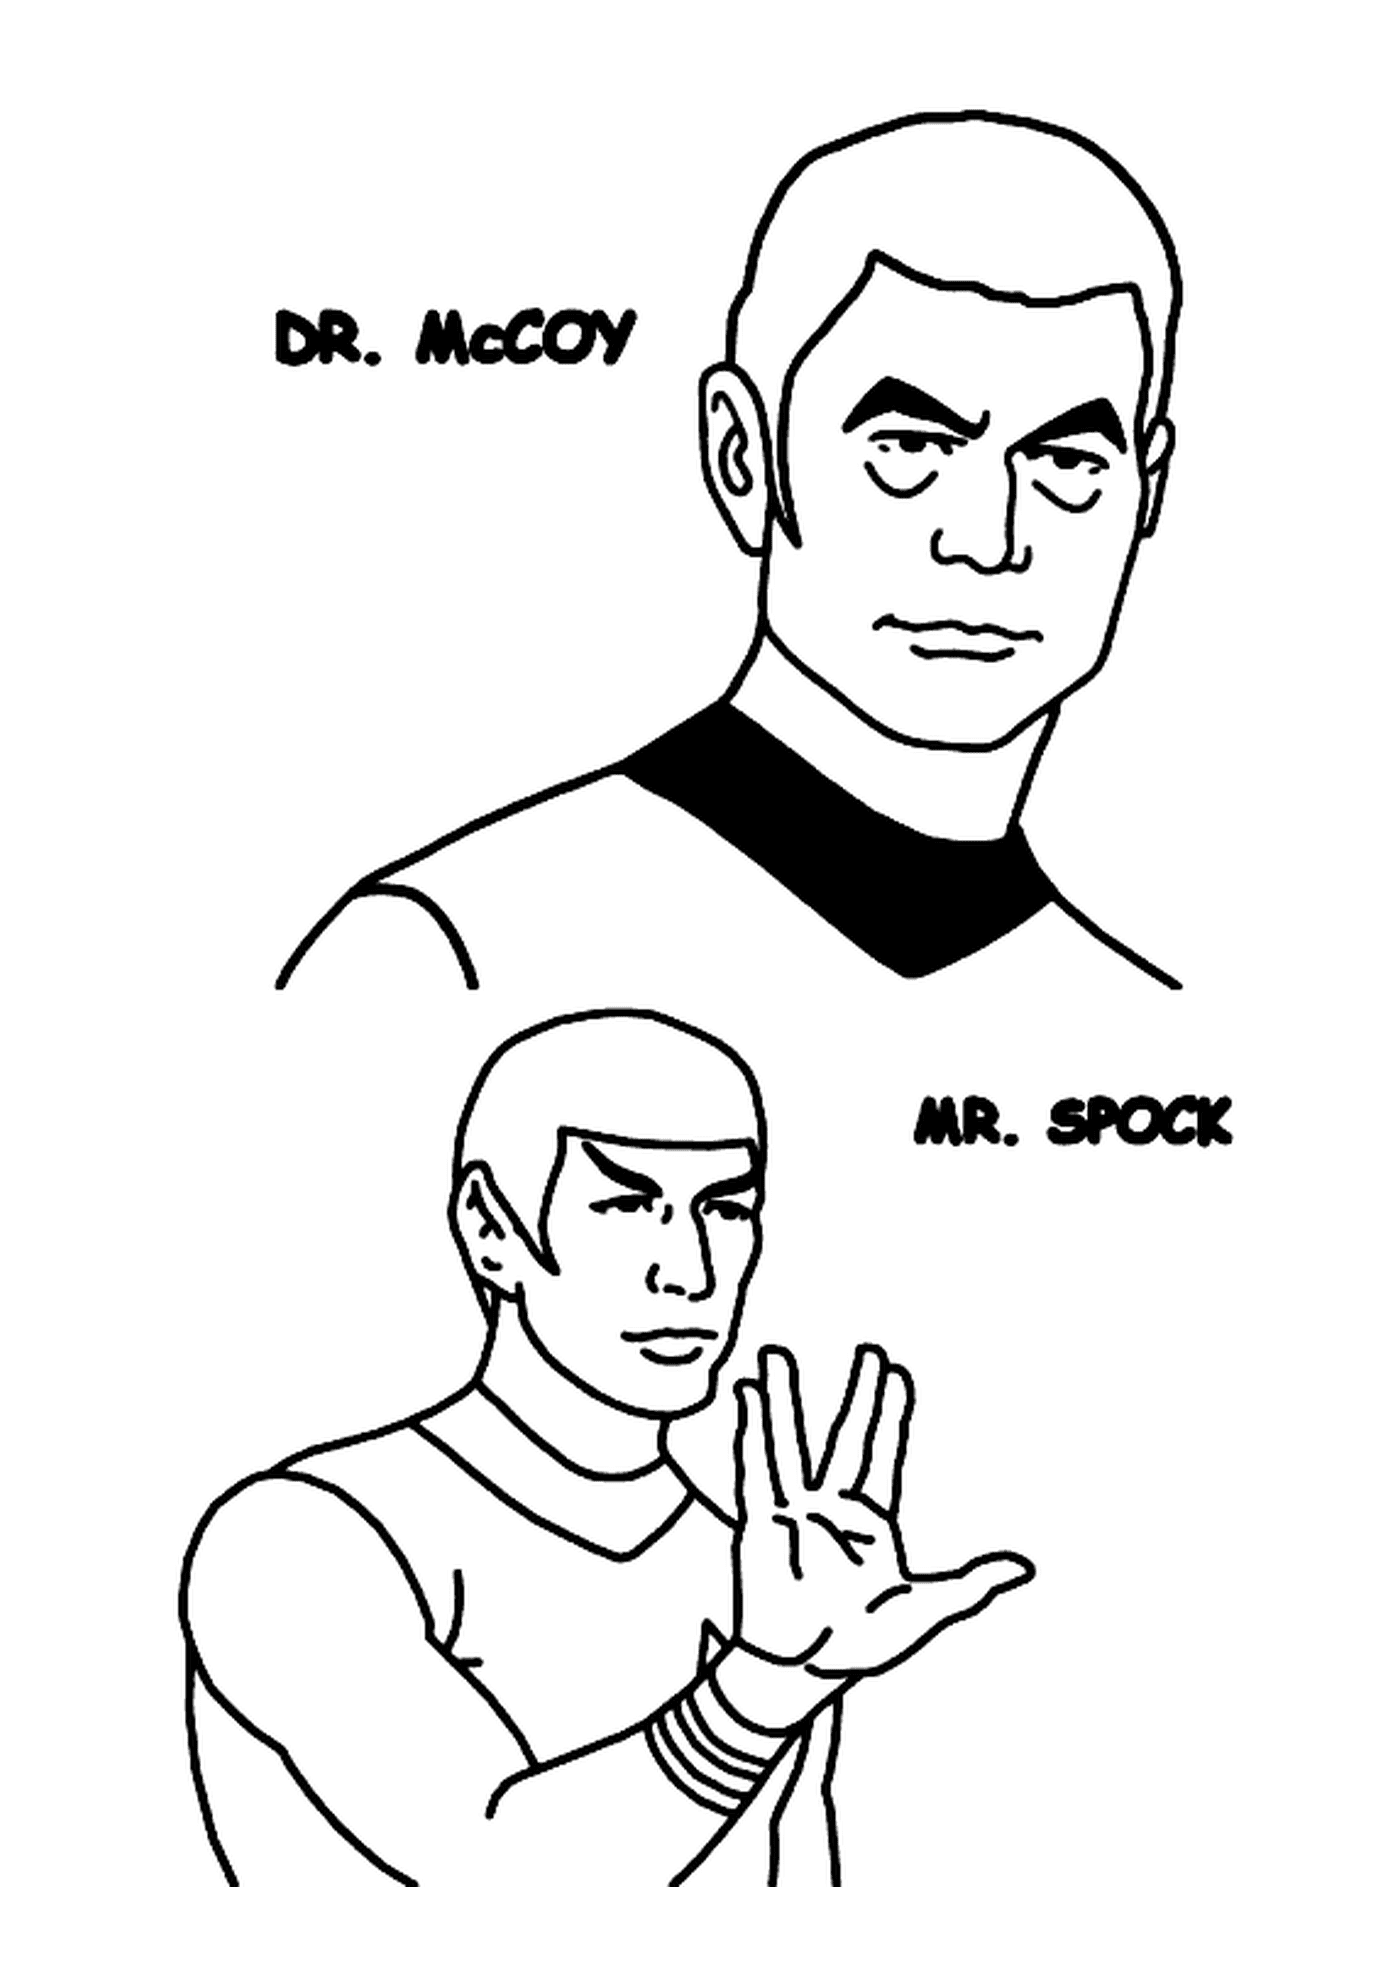   Docteur McCoy et Monsieur Spock de Star Trek 